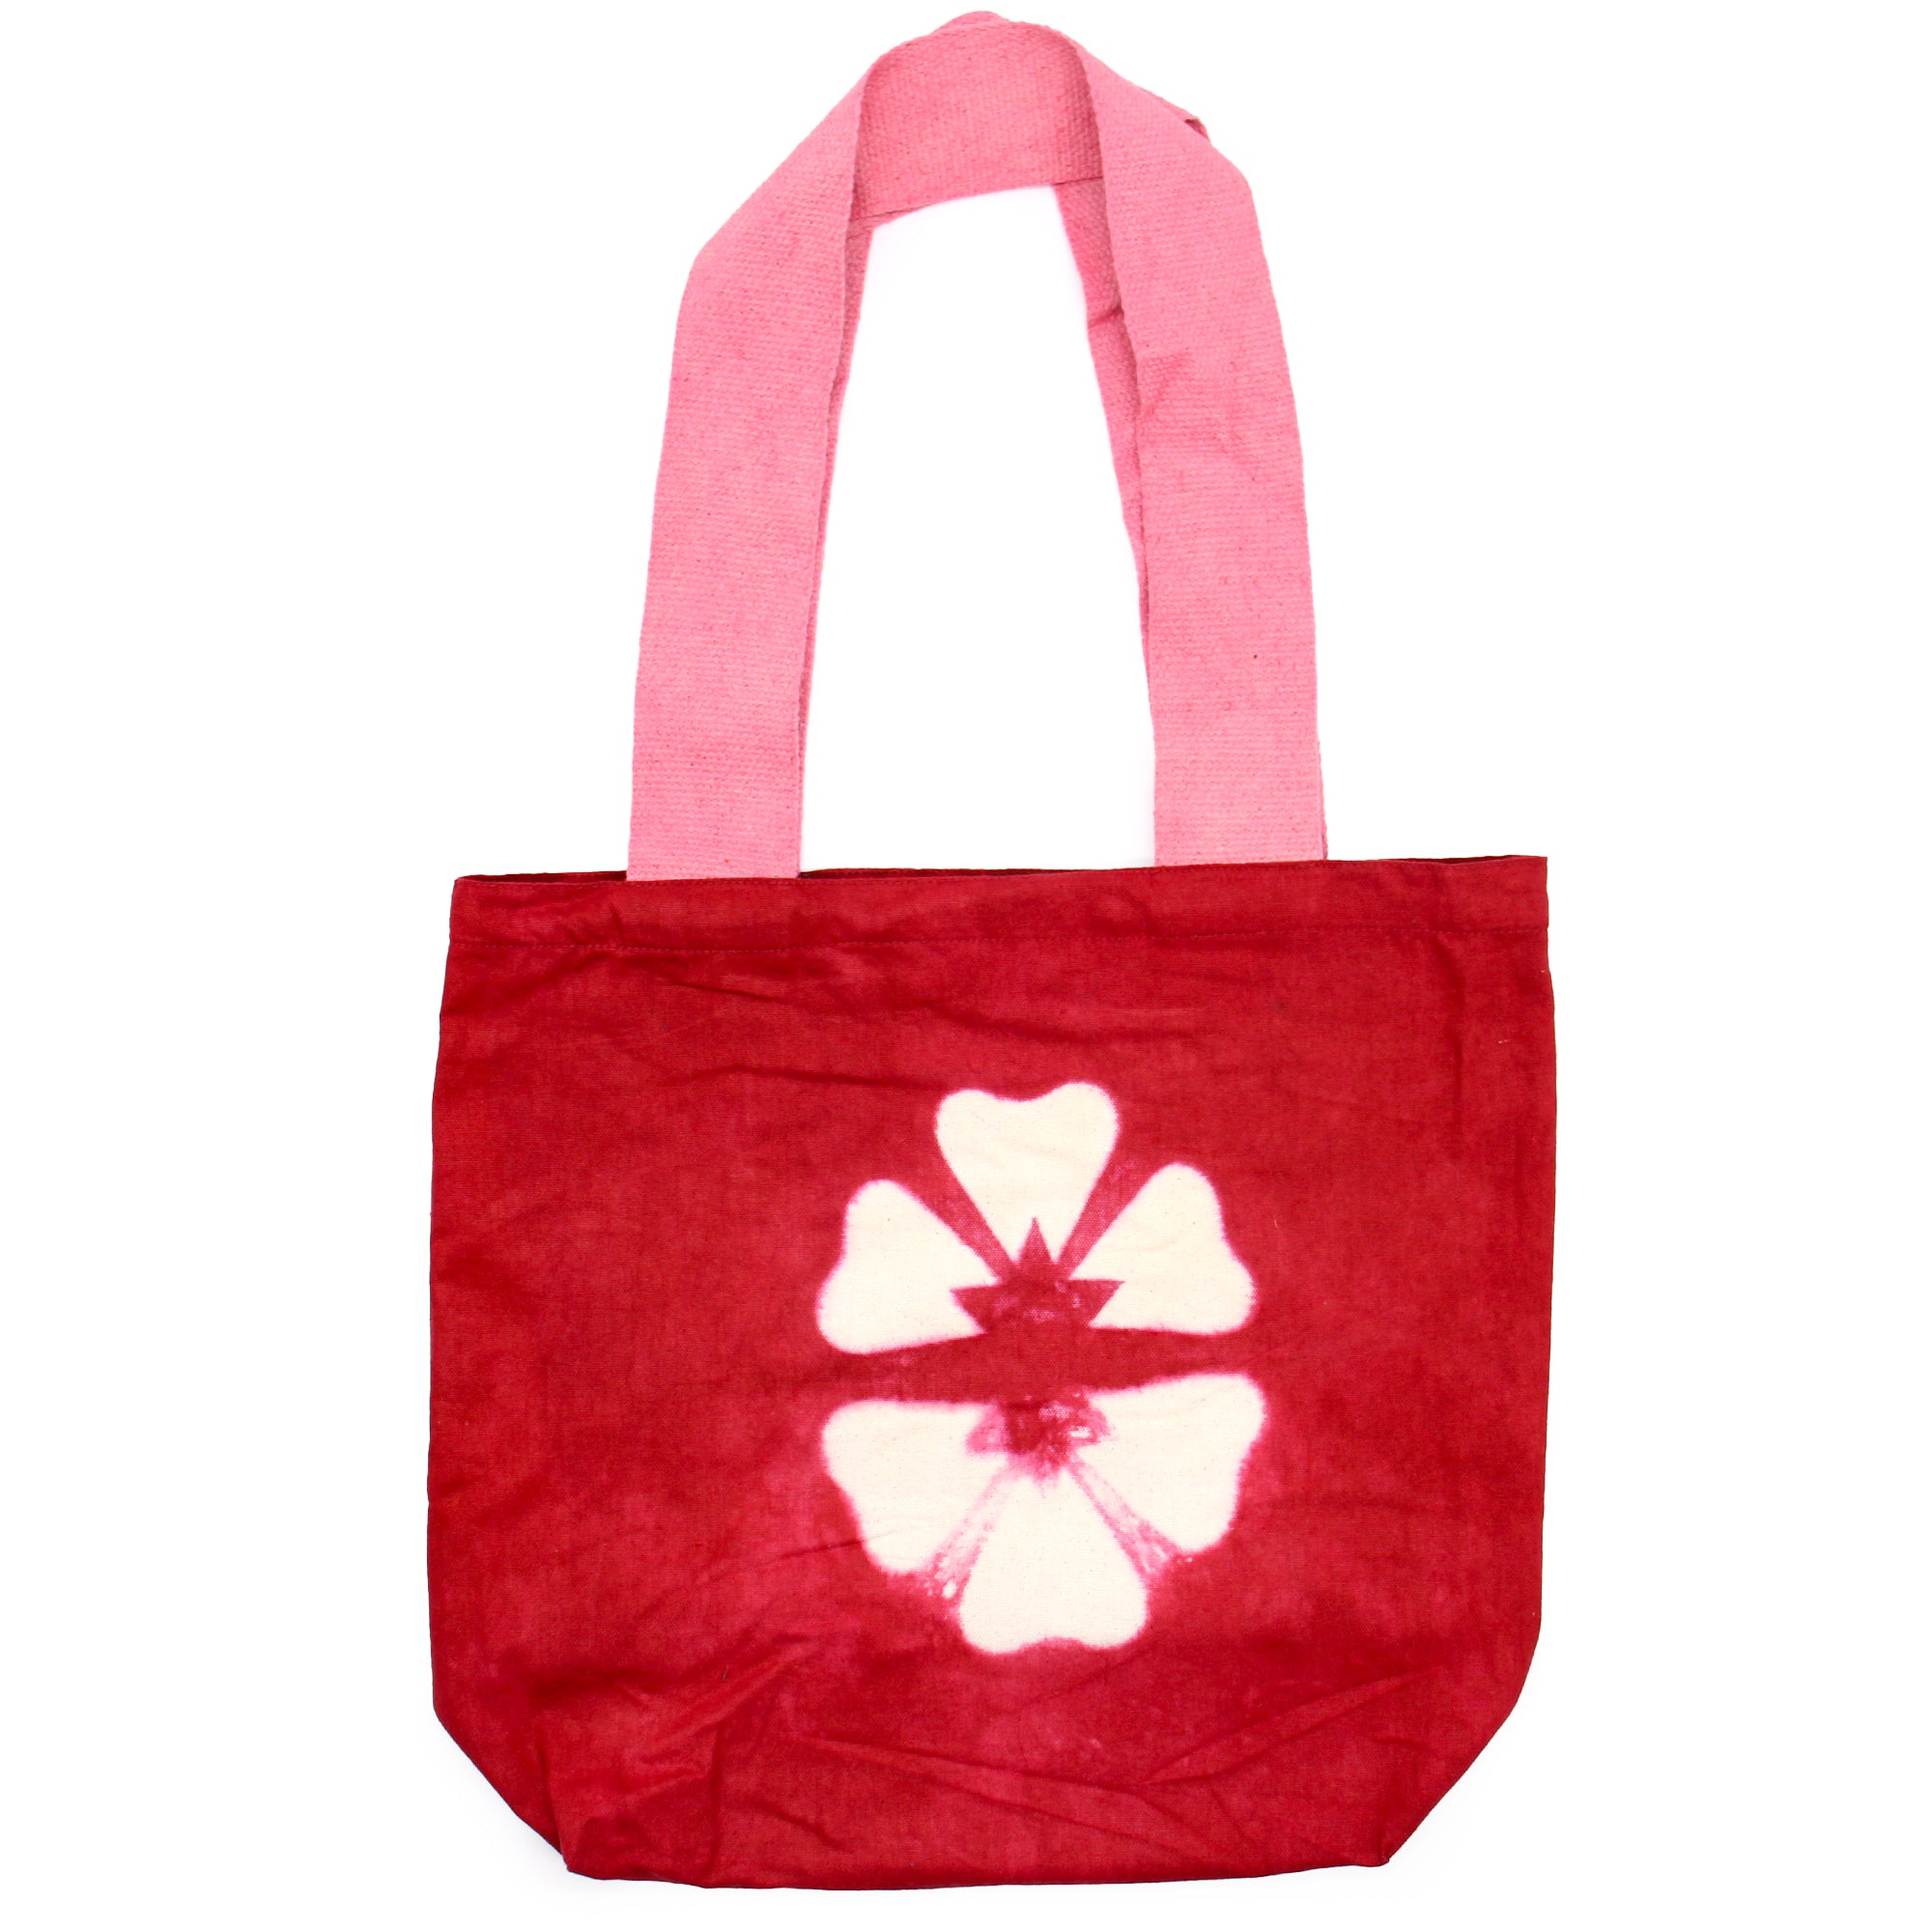 Natural Tye-Dye Cotton Bag (8oz) - 38x42x12cm - Maroon Flower - Pink Handle